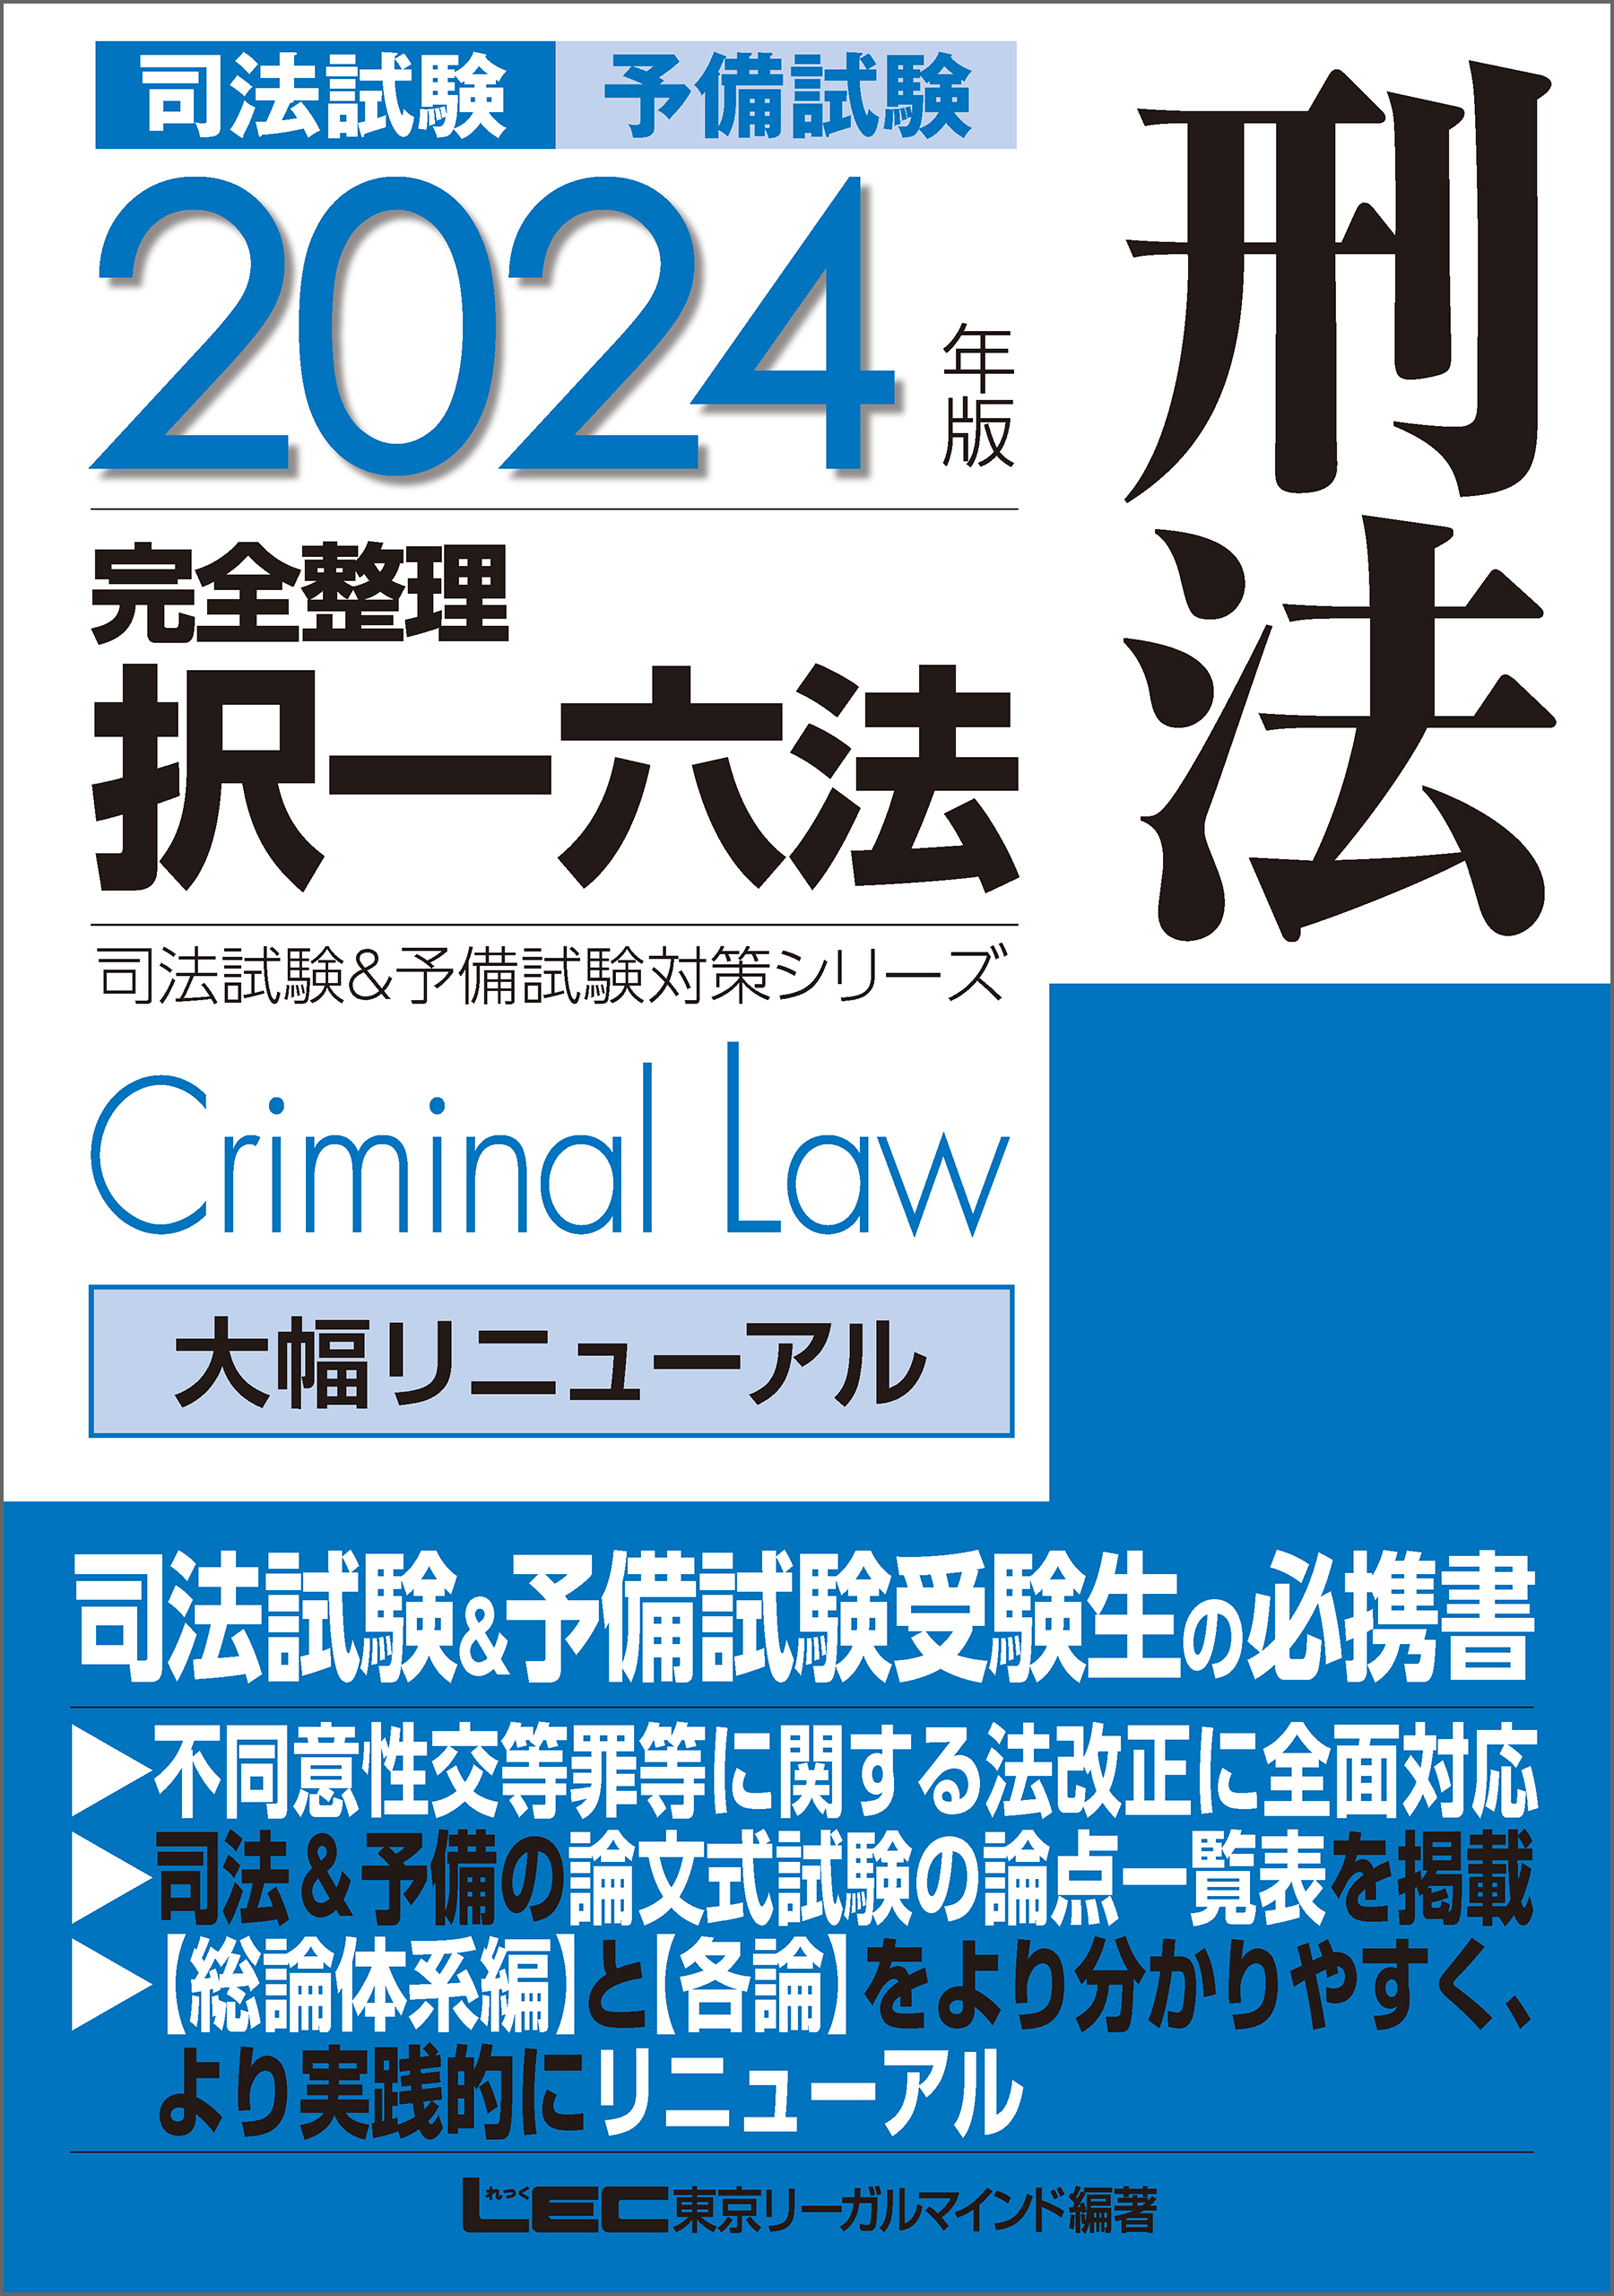 東京リーガルマインド 司法試験 体系別短答過去問題集 2023年合格目標 